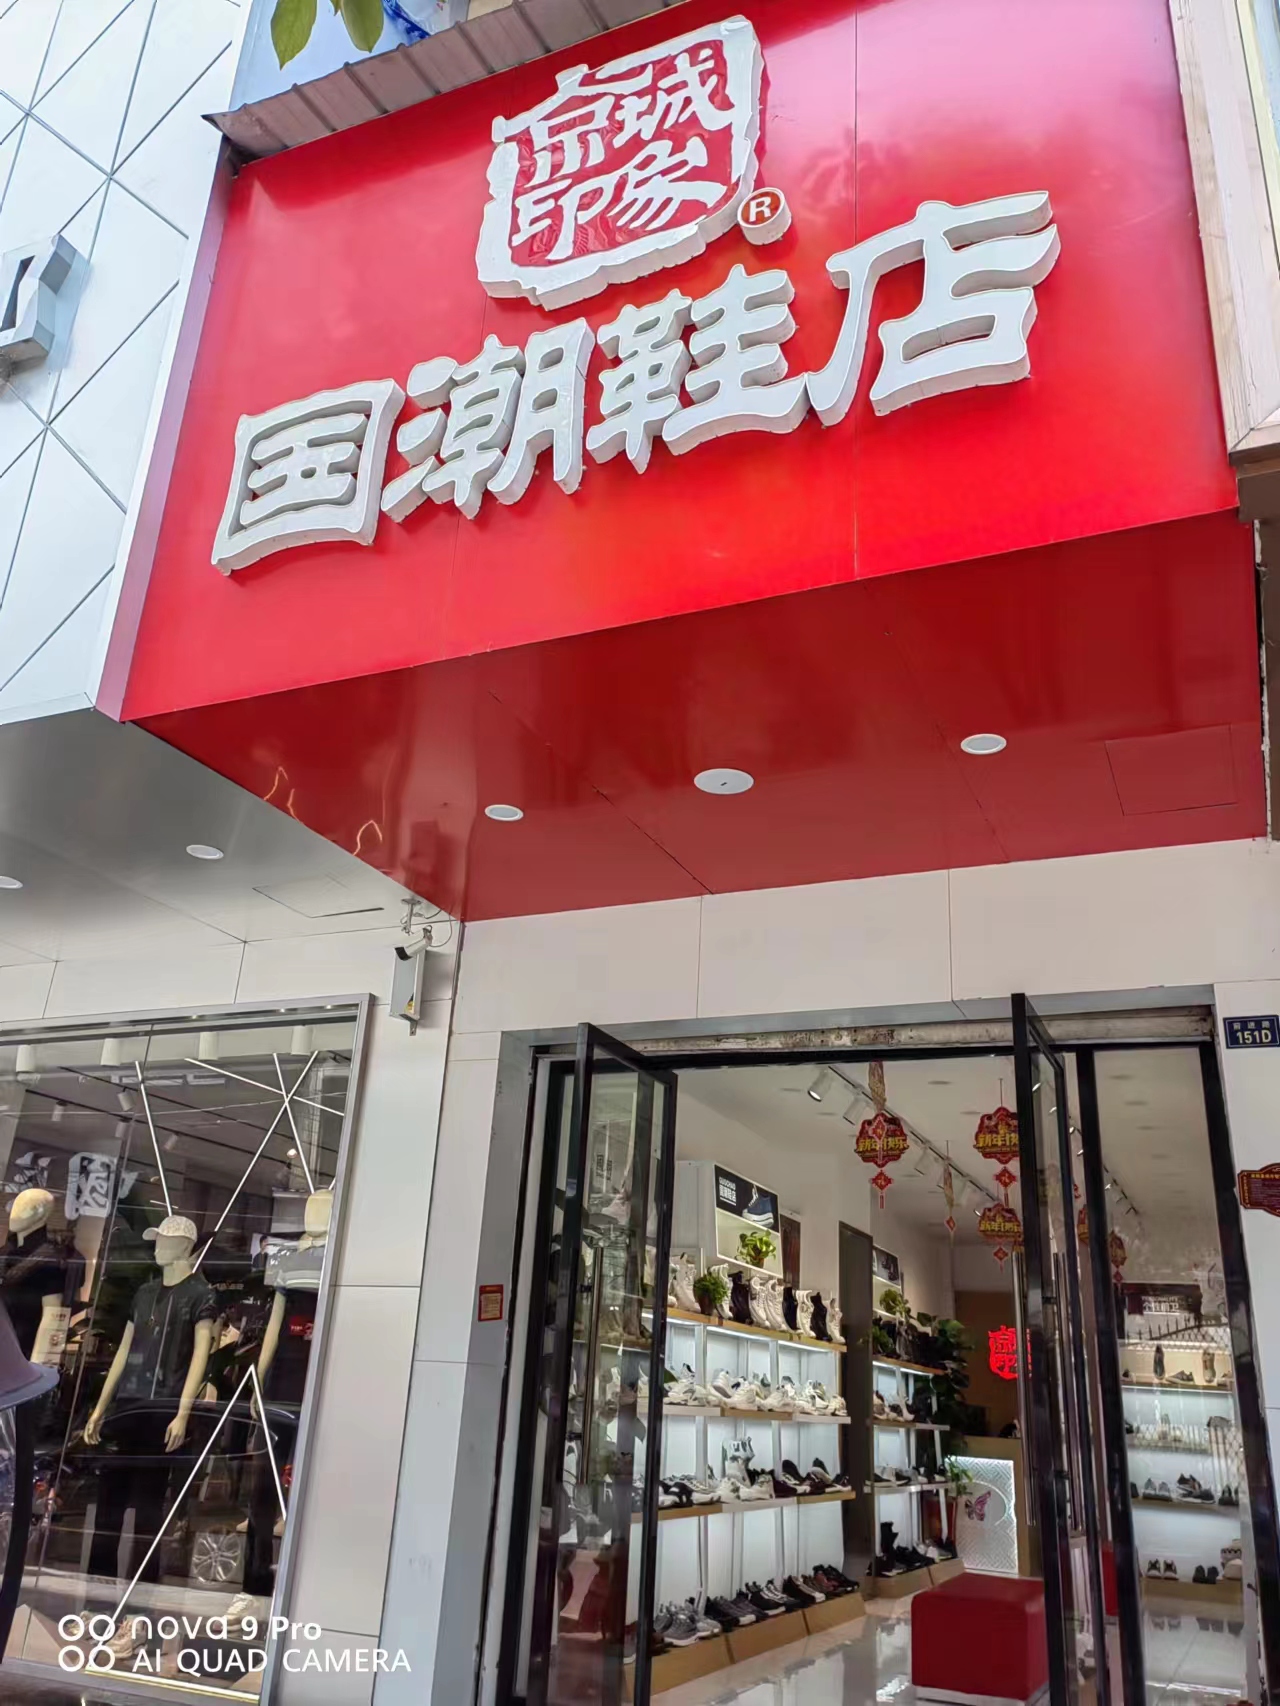 贺：京城印象老北京布鞋加盟店湖北咸宁程老板盛大开业！